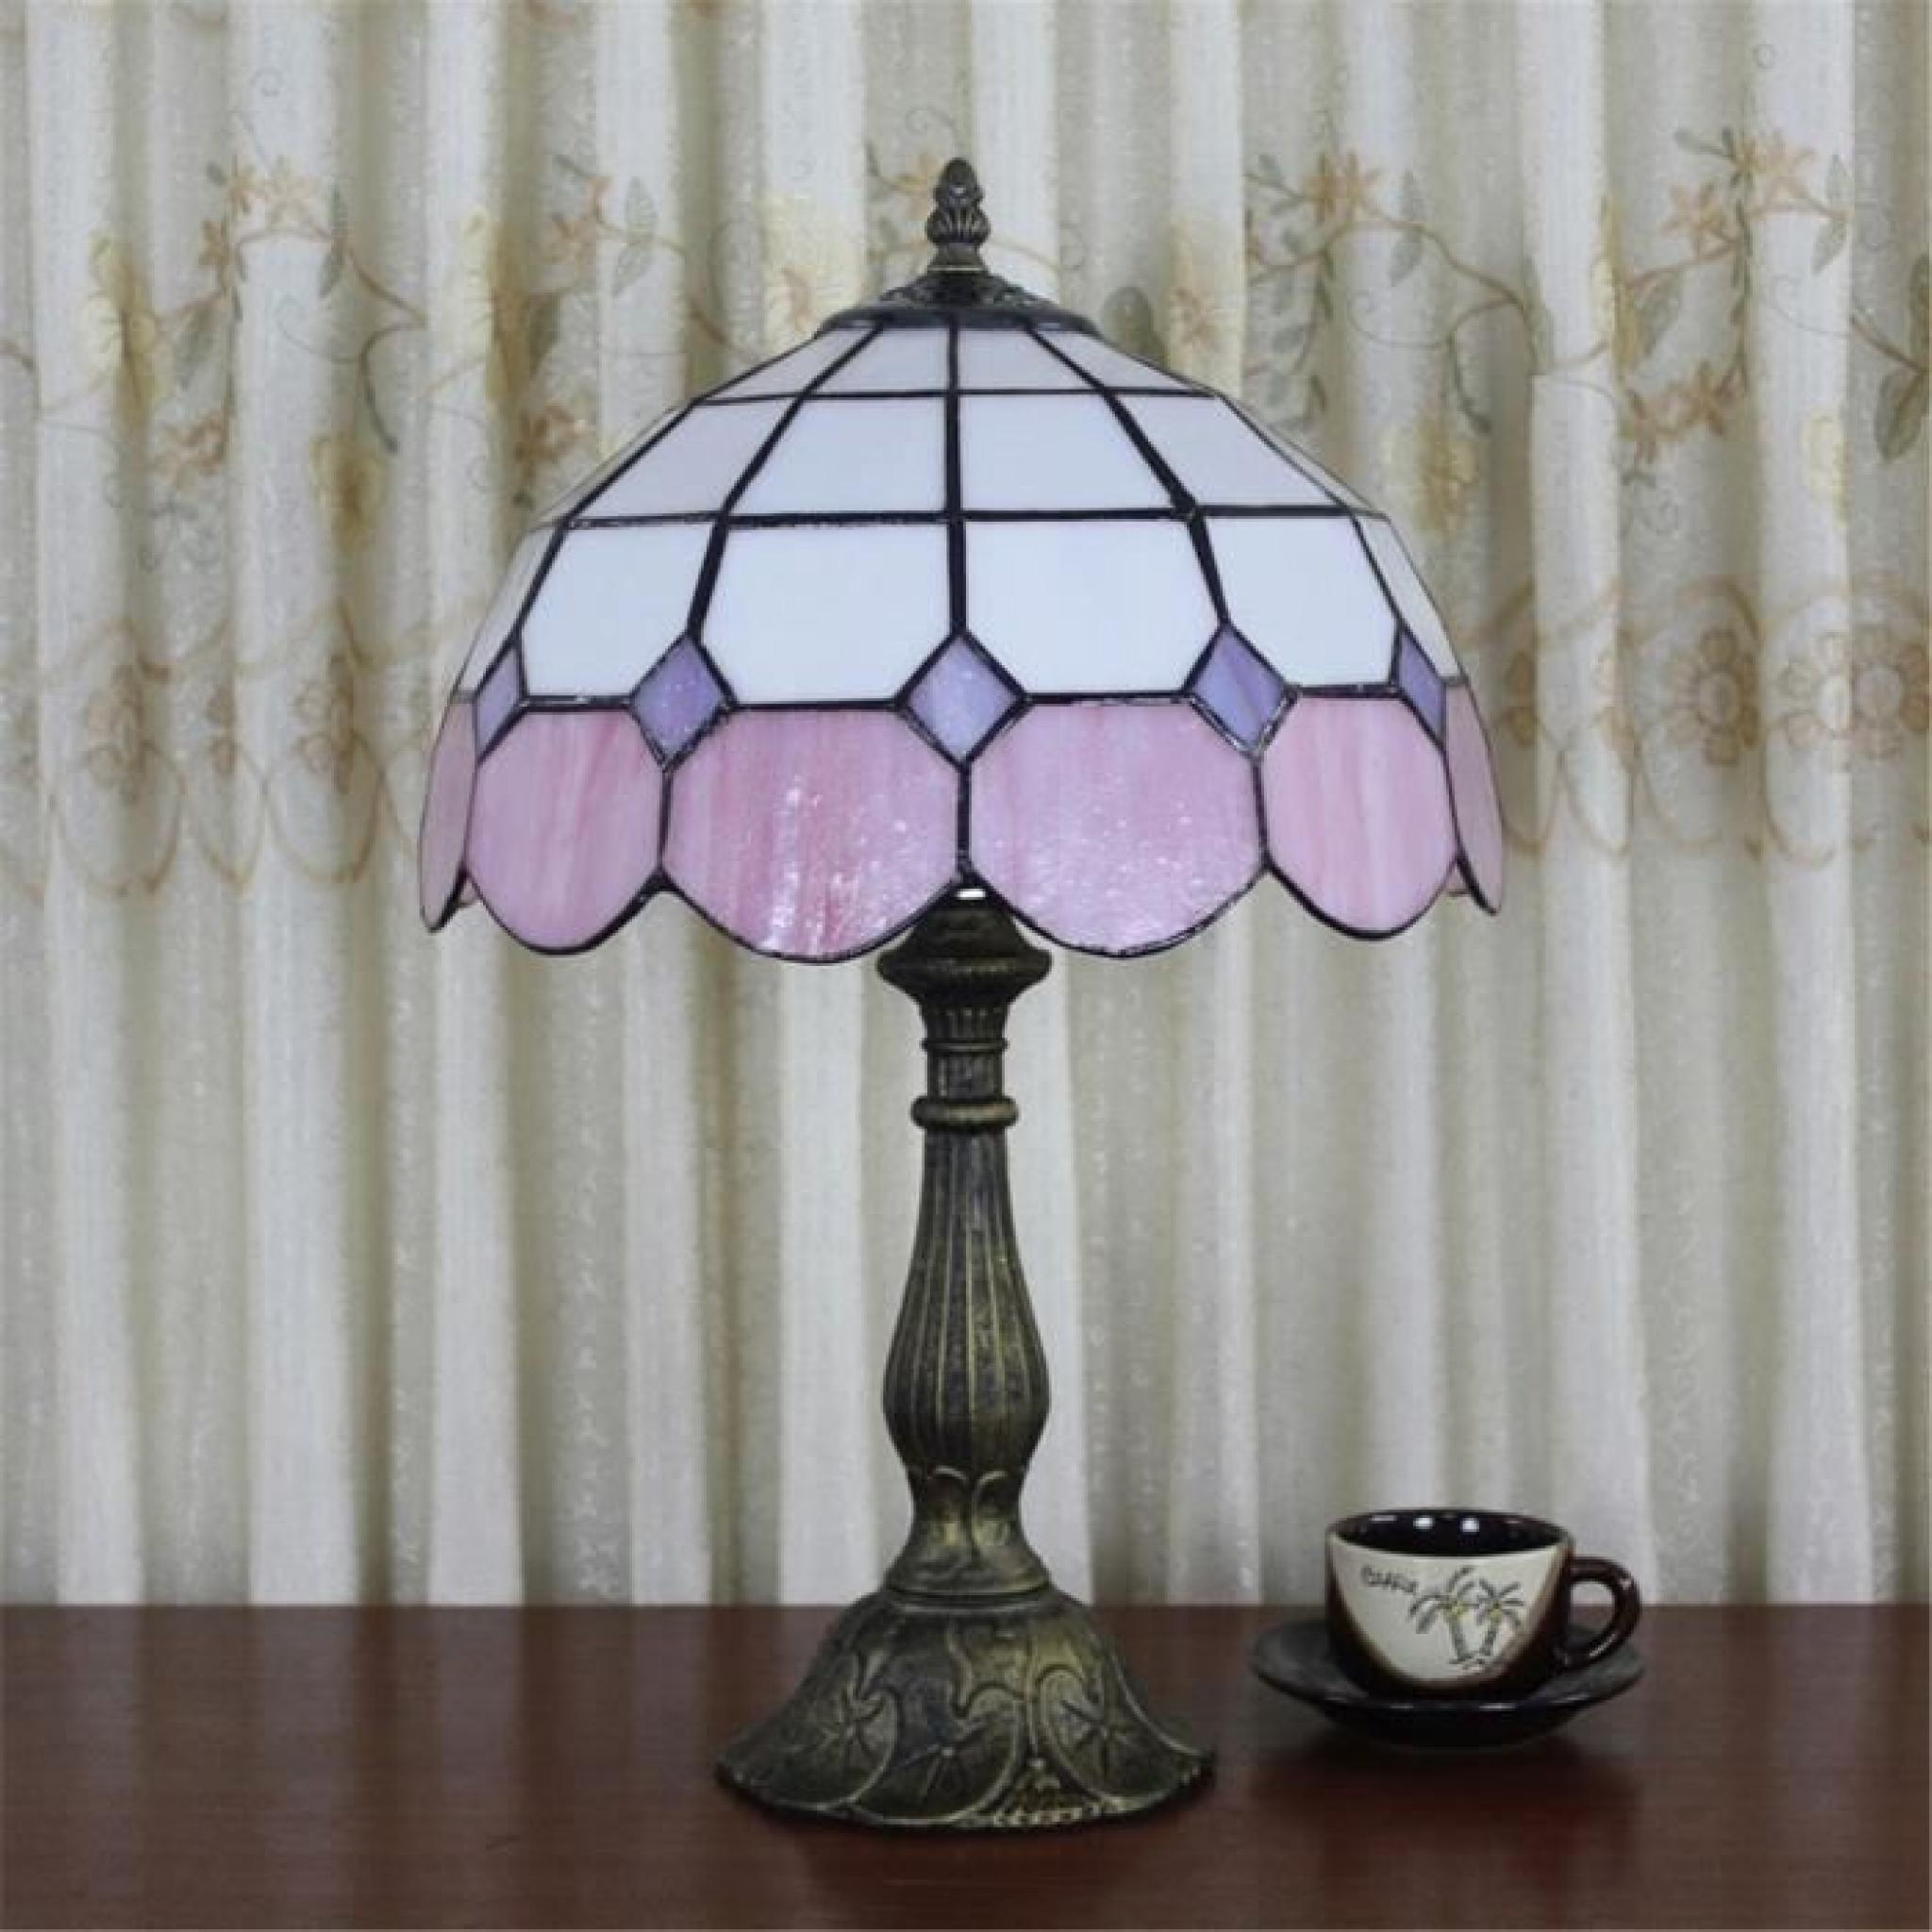 FerandHome Lampe A Poser Lampe de Chevet Luminaire Classique Magnifique Antique Chambre Bureau Eclairage Lilas pas cher